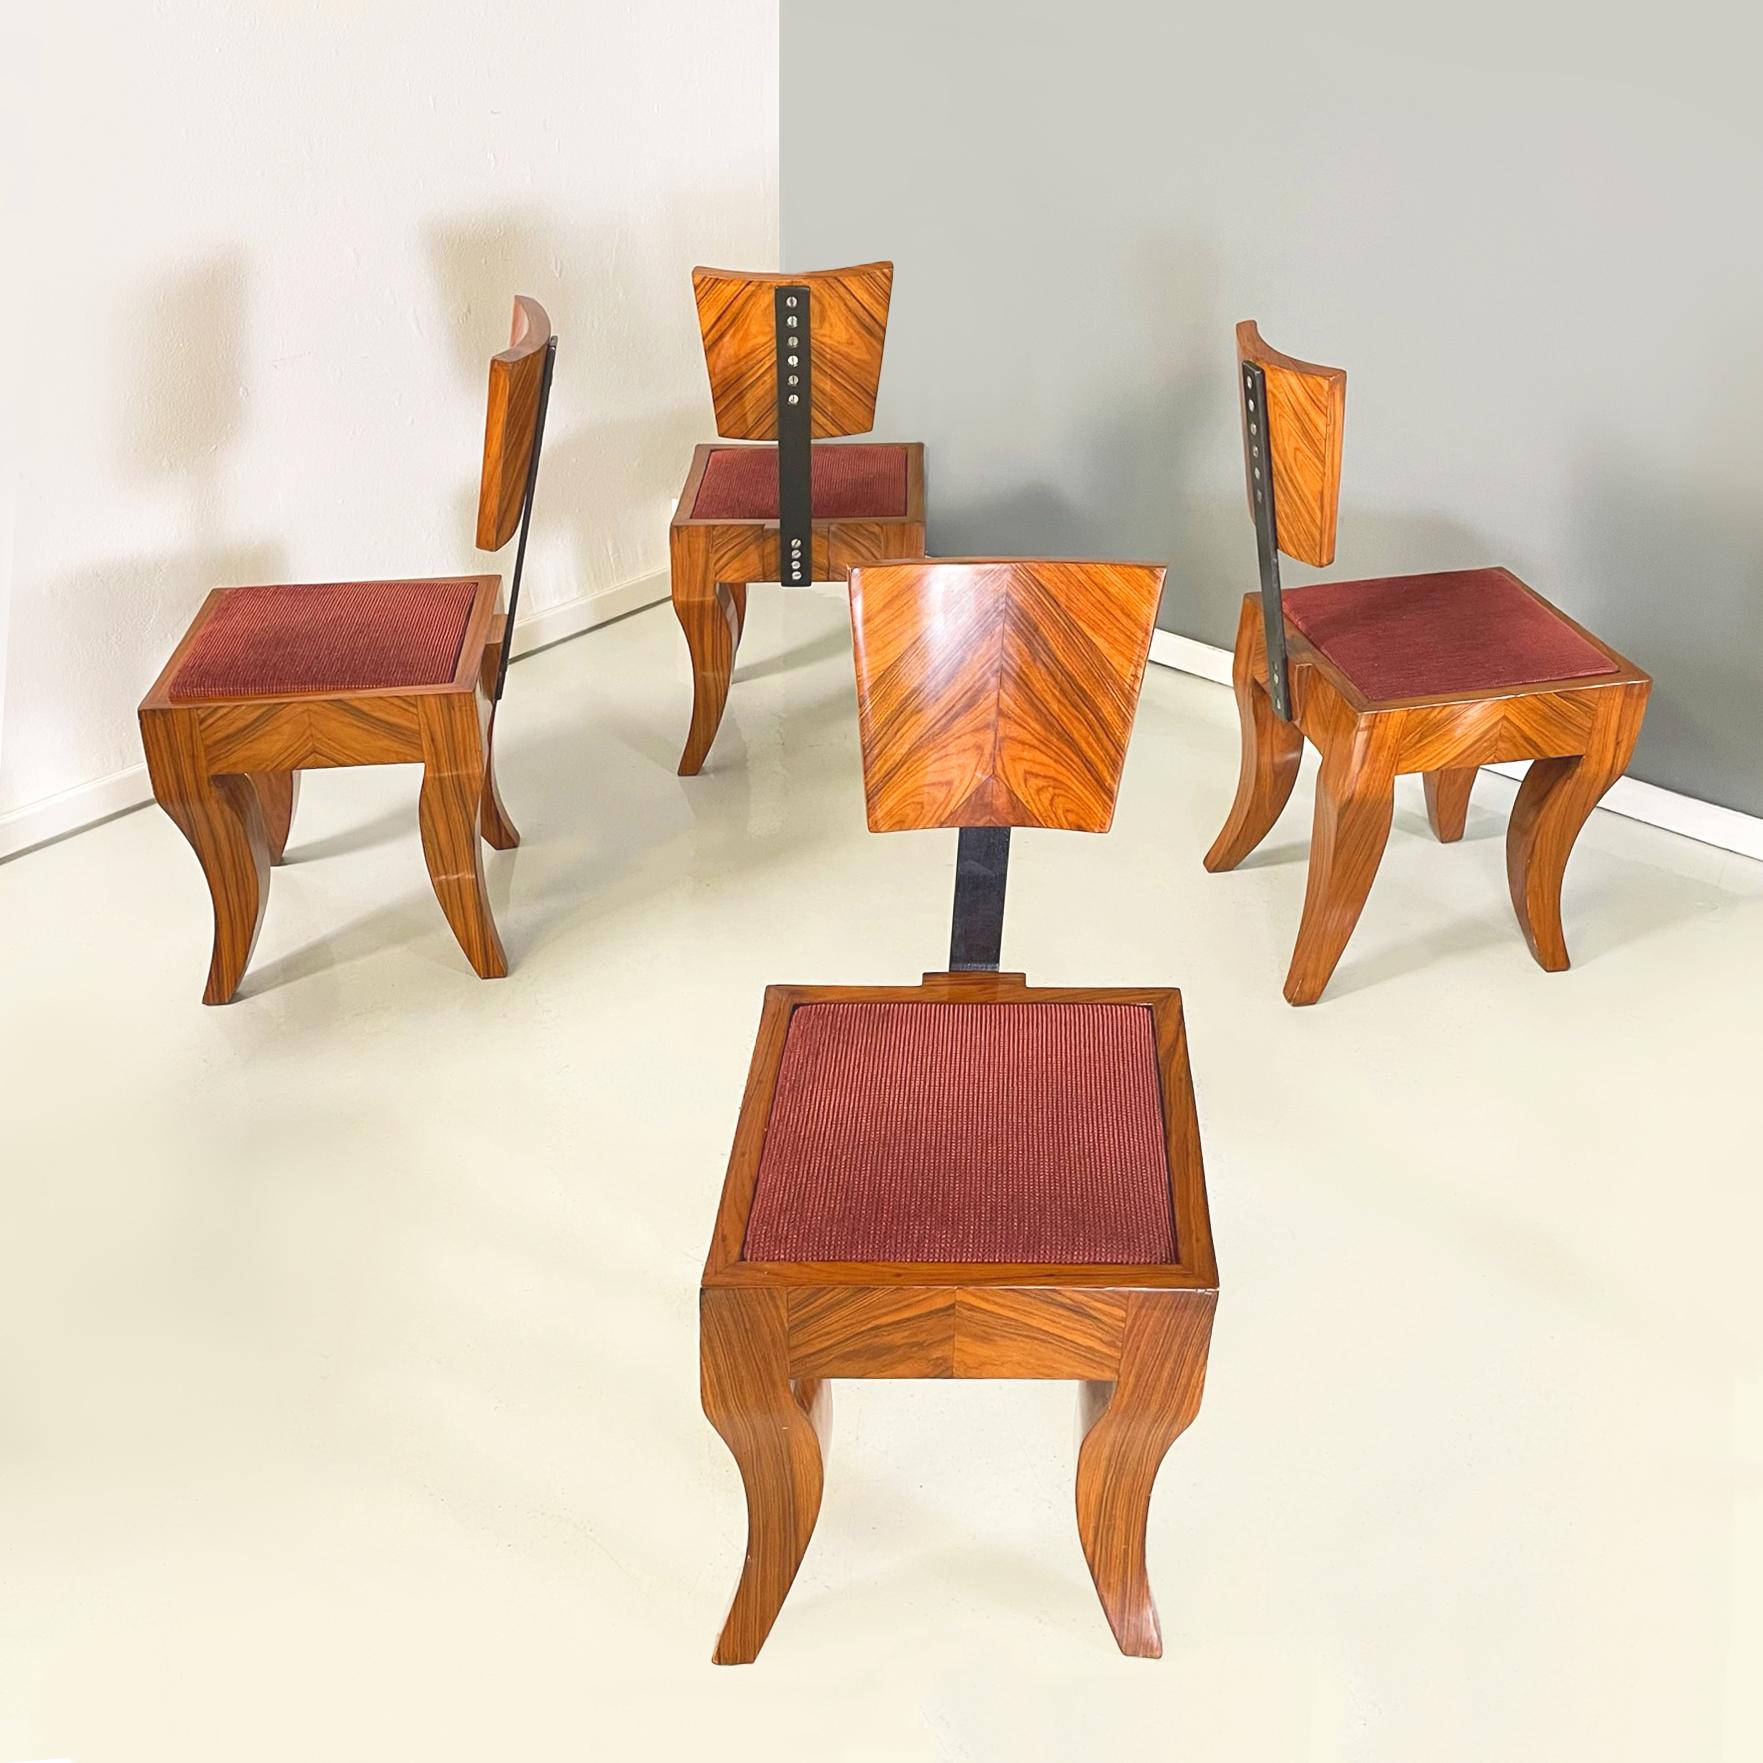 Italienische Art-déco-Stühle aus Massivholz, schwarzem Metall und rotem Stoff, 1920-1930er Jahre
Satz von 10 Art-Deco-Esszimmerstühlen mit polierter Massivholzstruktur. Die Sitzfläche besteht aus einem leicht gepolsterten, quadratischen Kissen mit